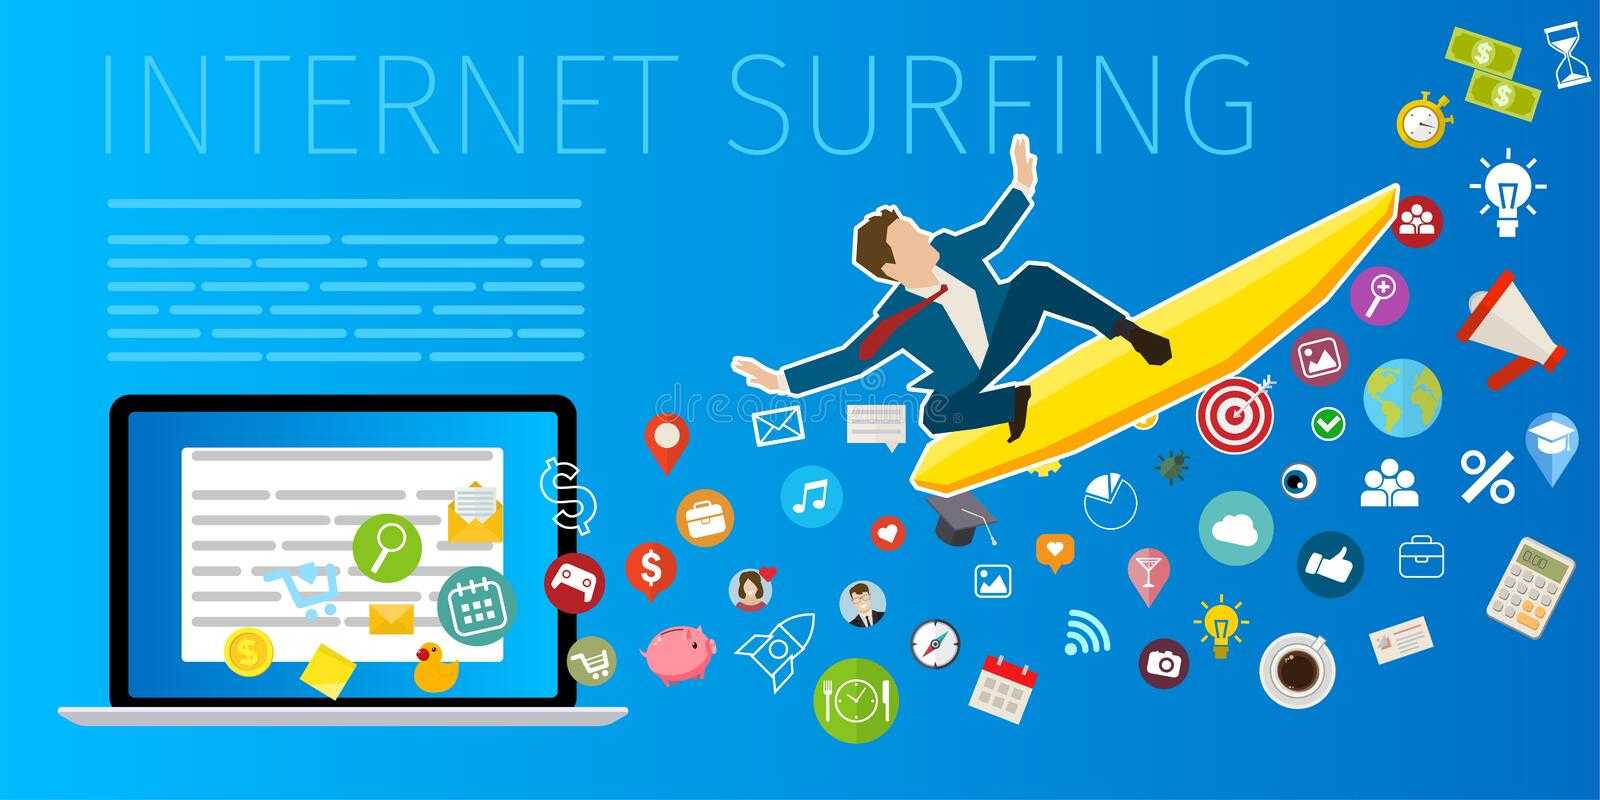 Веб серфинг. Сёрфинг в интернете. Серфинг в интернете векторные иллюстрации. Интернет серфер. Занимайтесь серфингом в интернете.